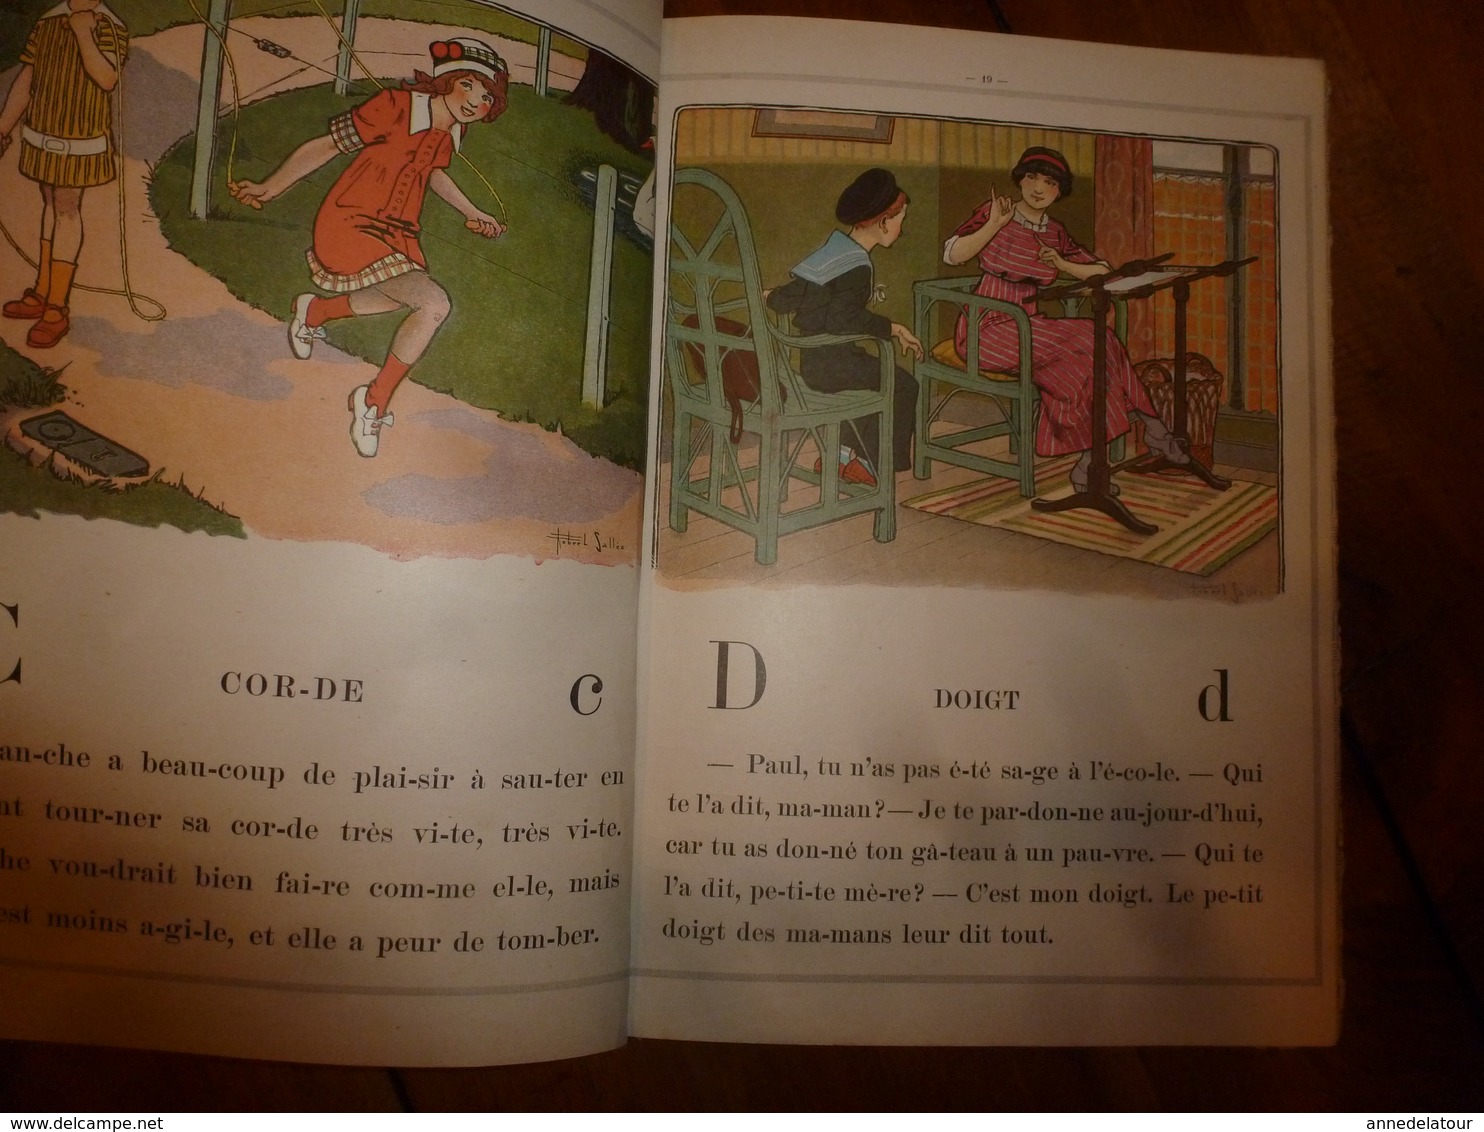 1933 JE SAURAI LIRE -Alphabet Méthodique et Amusant , par un PAPA - Nombreuses gravures , par Robert Sallès